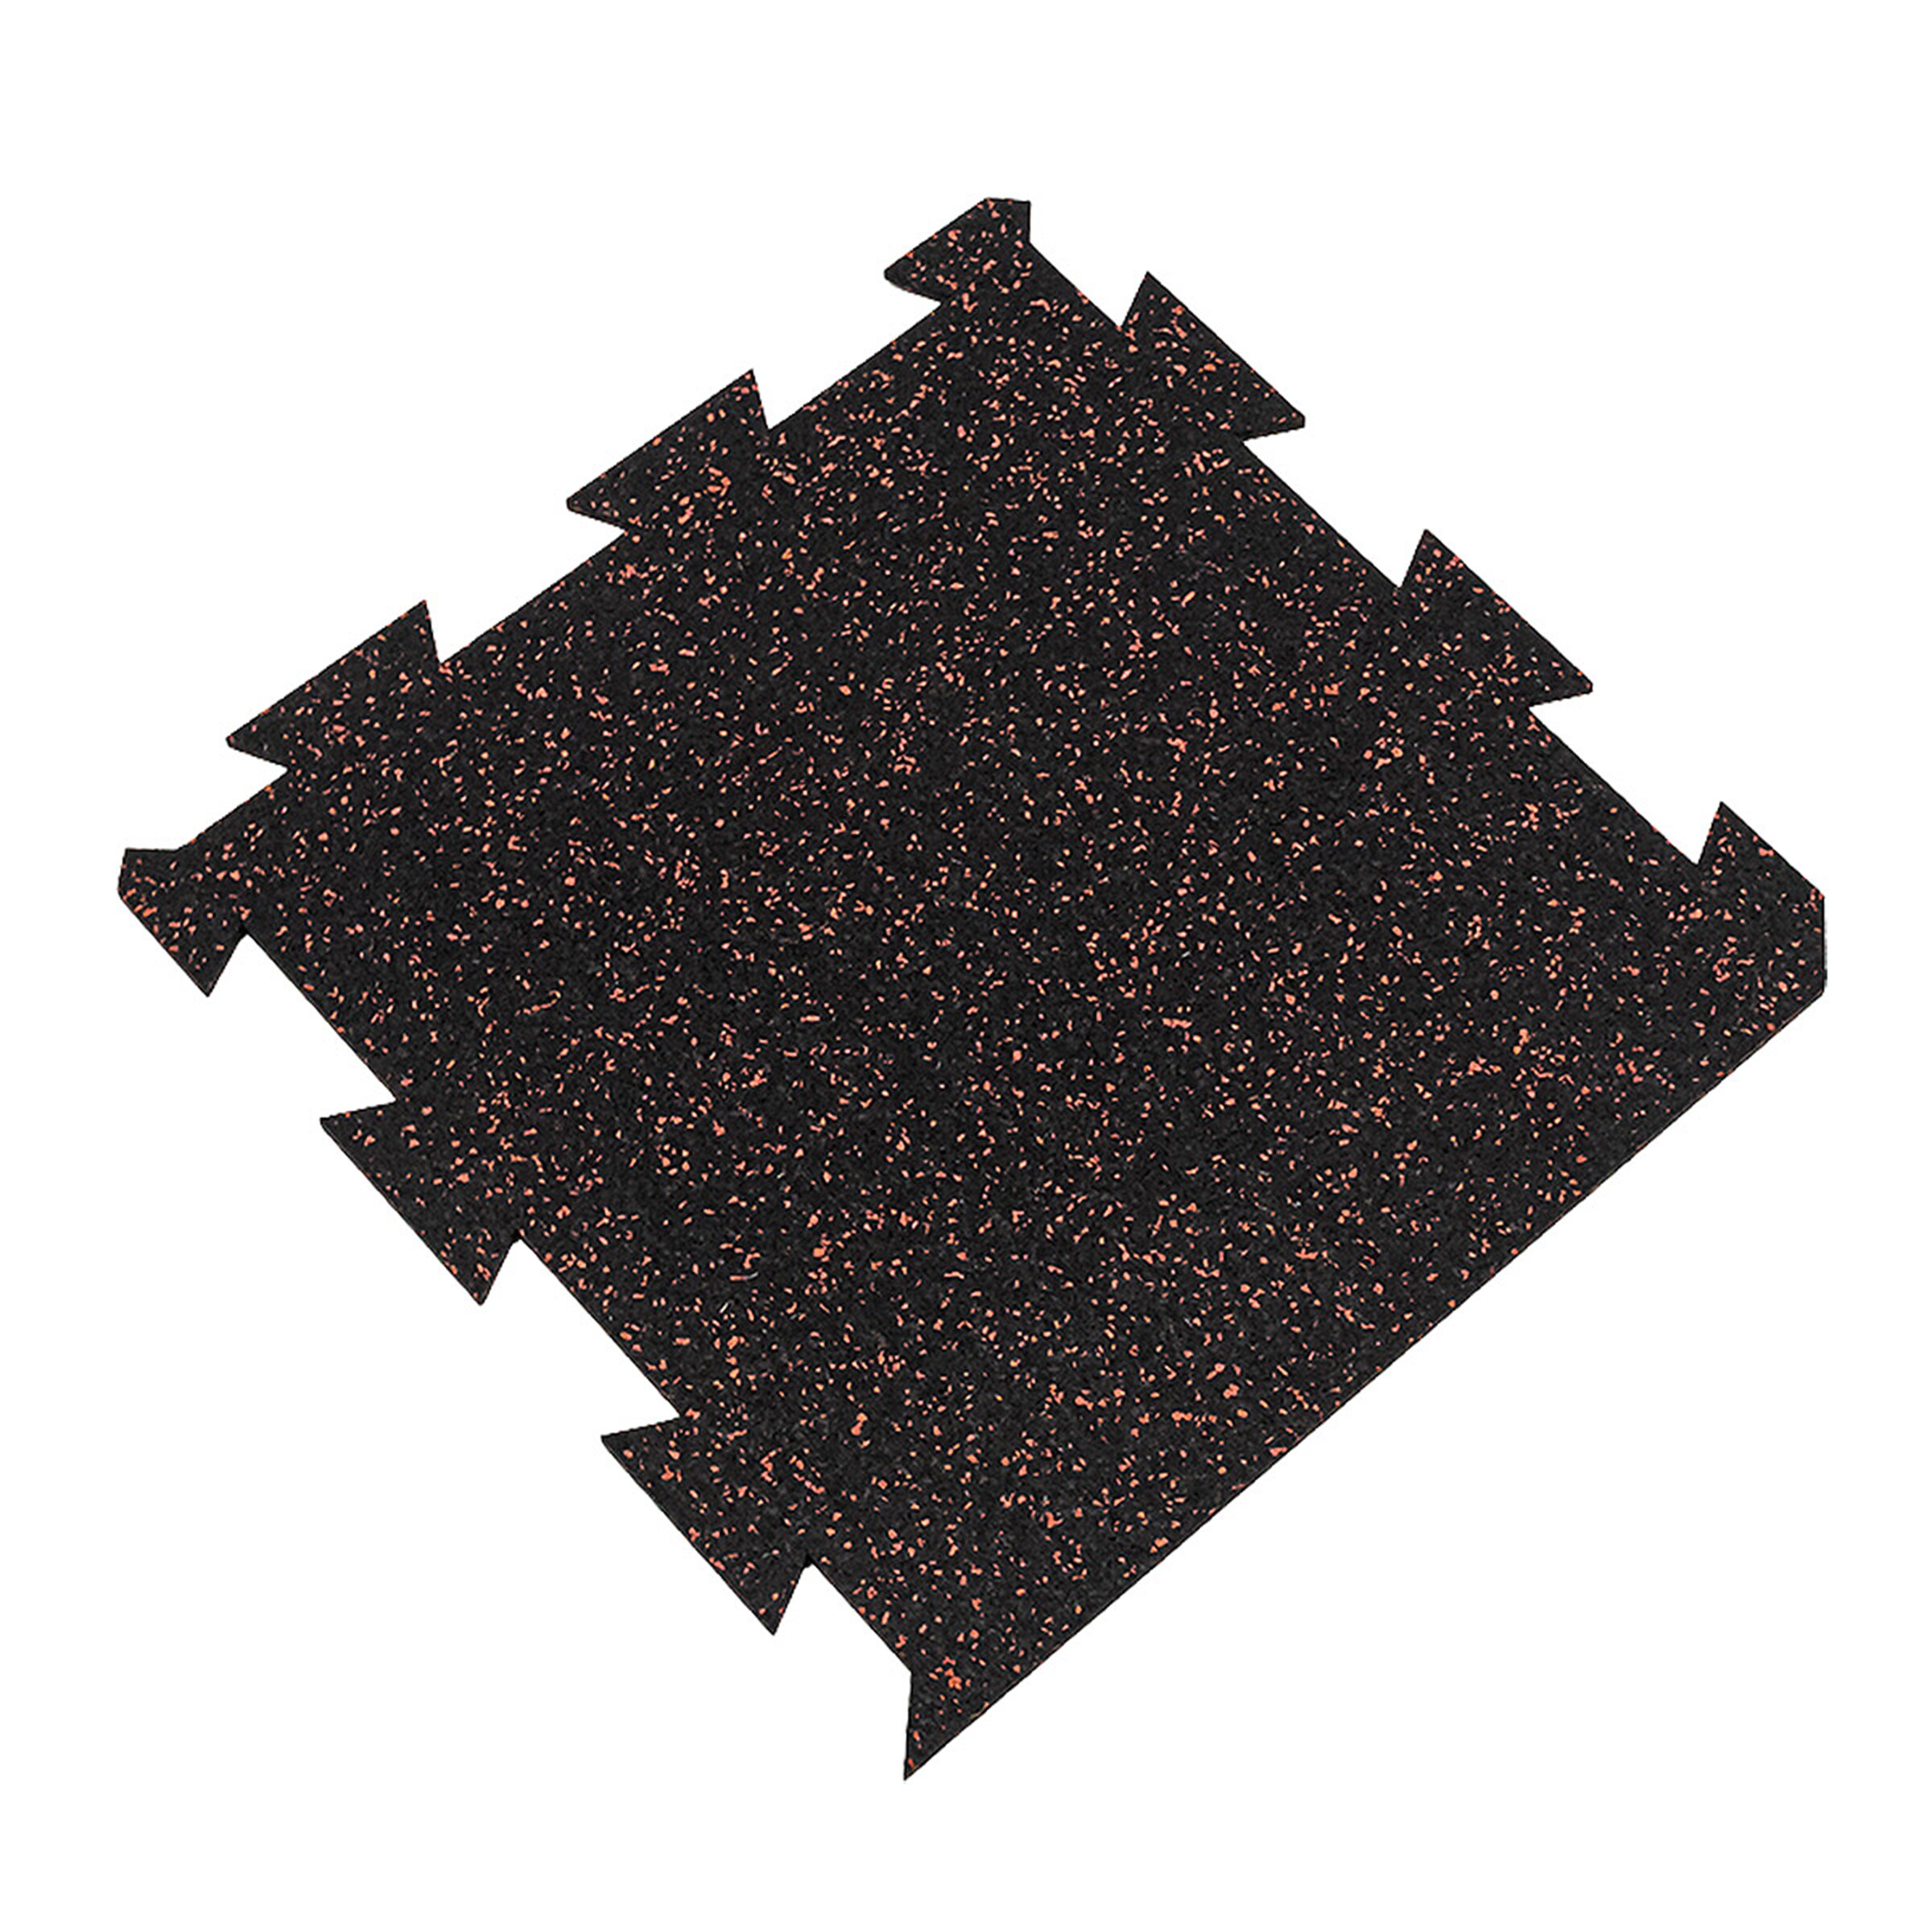 Čierno-červená gumová modulová puzzle dlažba (okraj) FLOMA FitFlo SF1050 - dĺžka 50 cm, šírka 50 cm, výška 1,6 cm